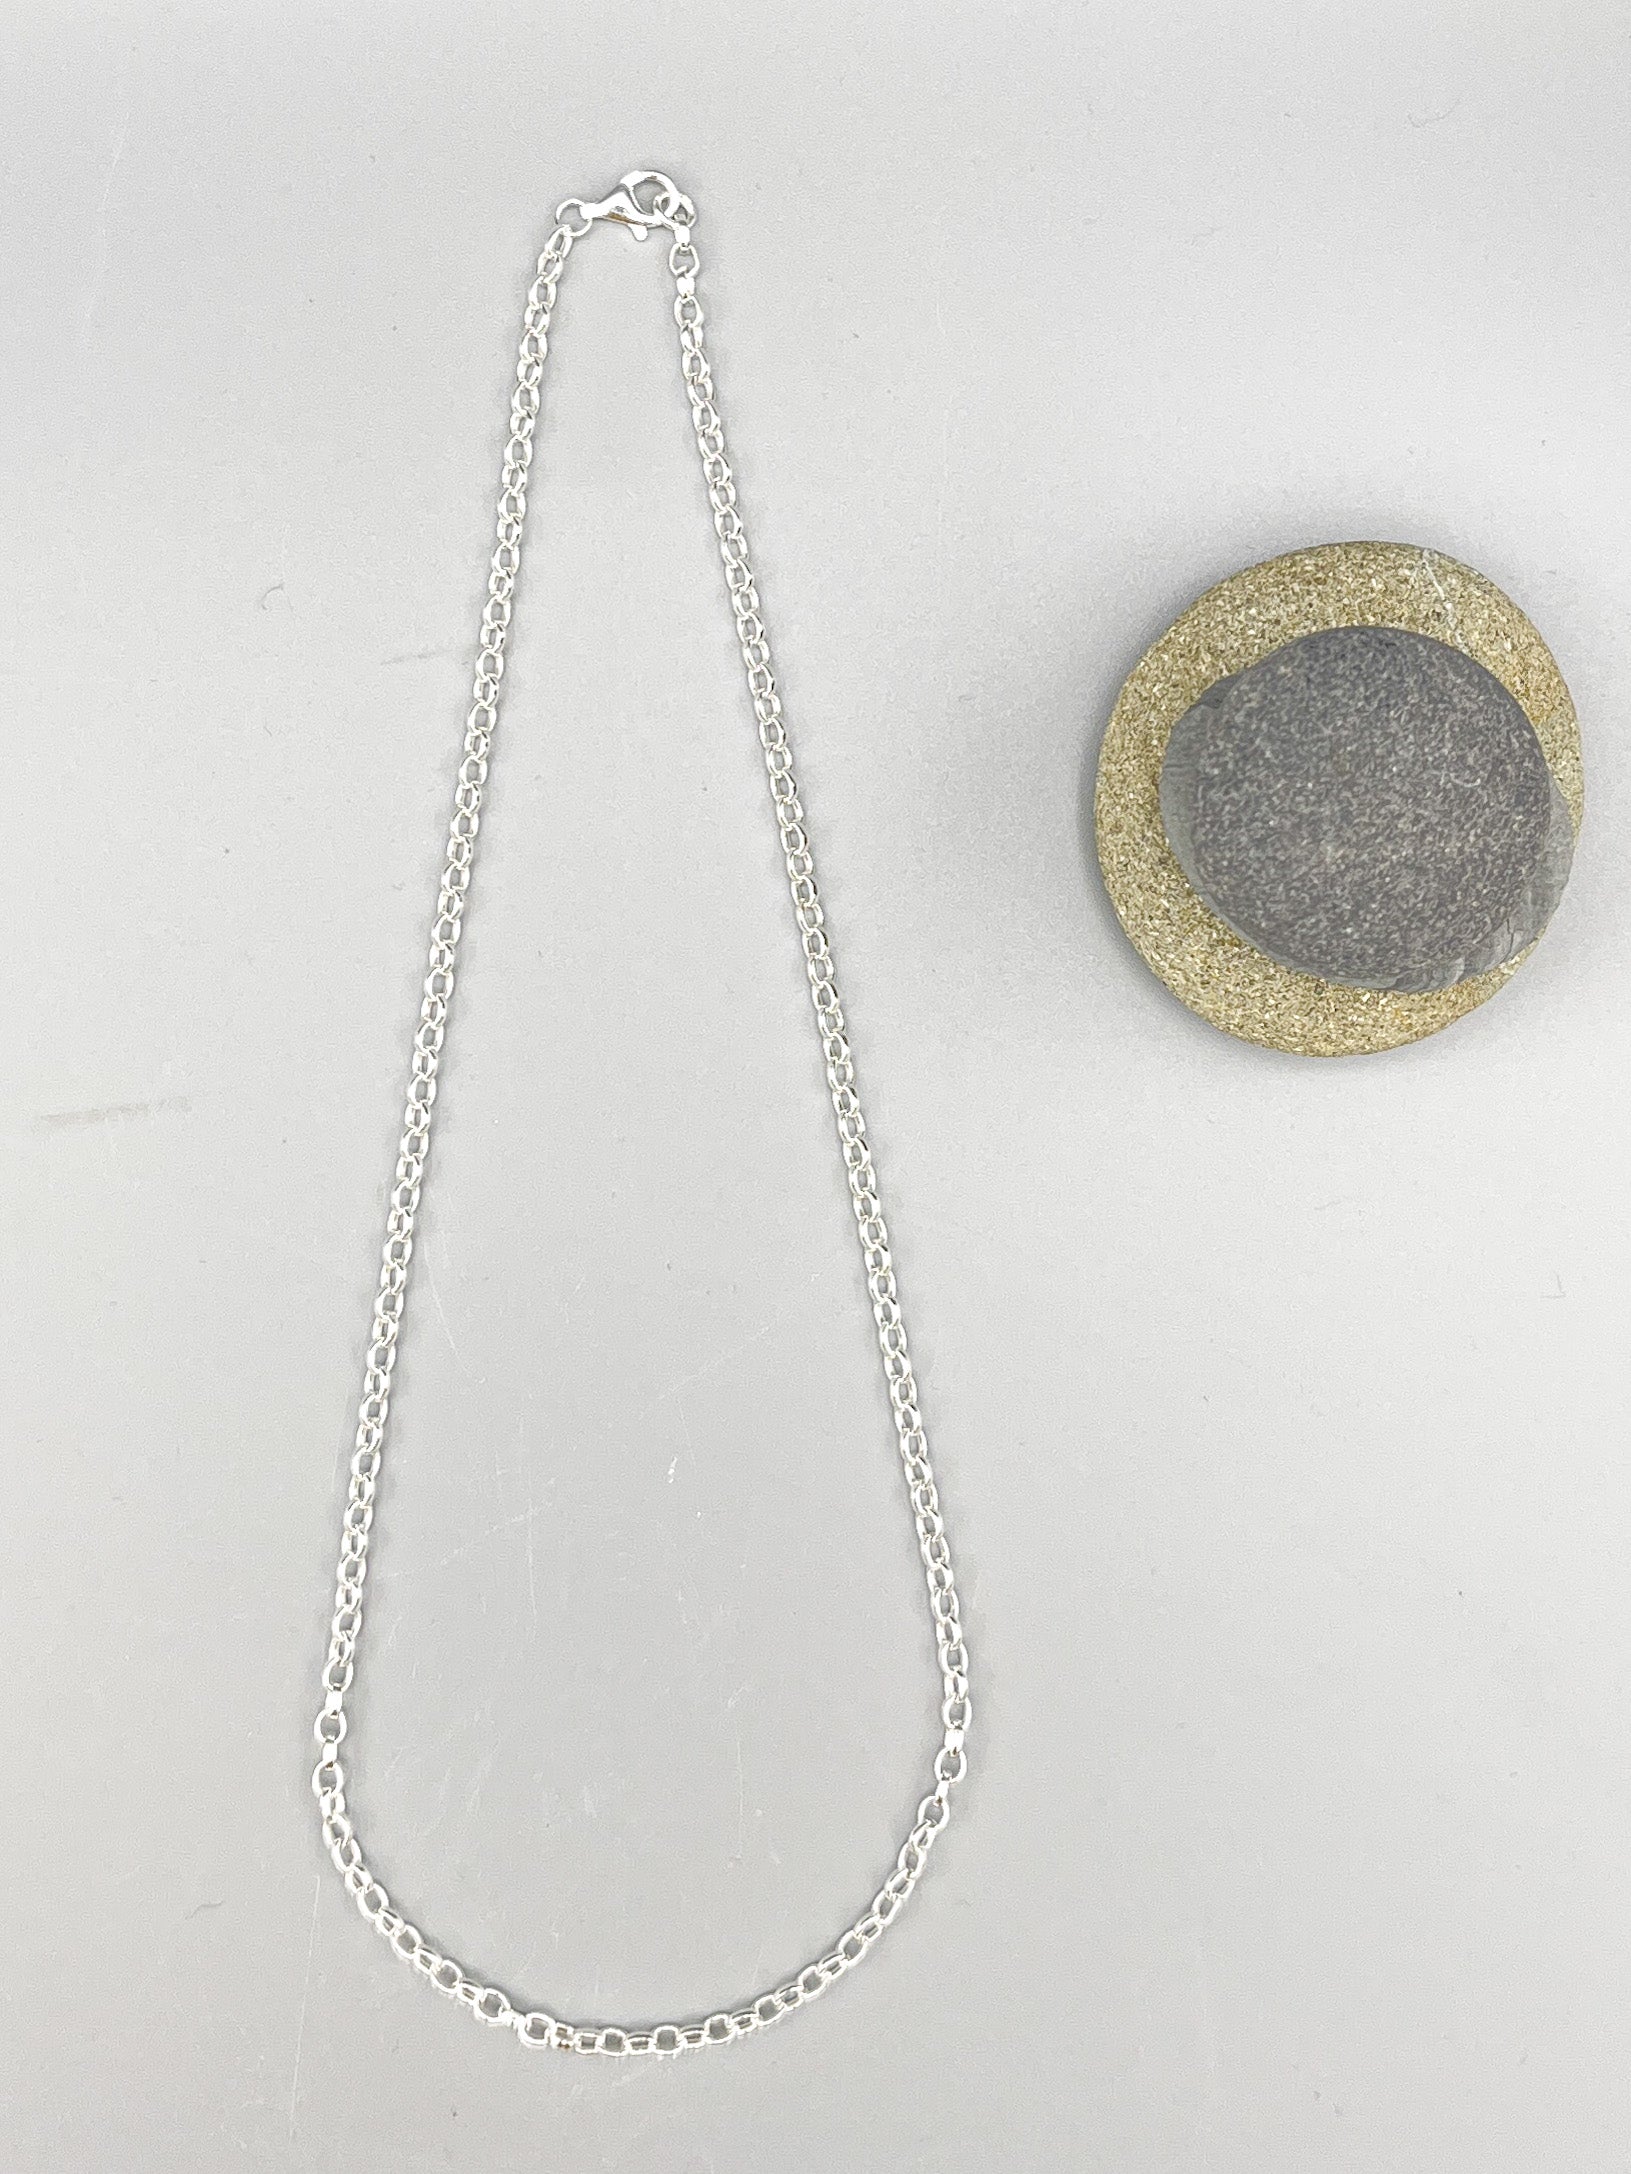 Sterling Silver Necklace. 18” (45cm) long polished 3mm polished belcher link